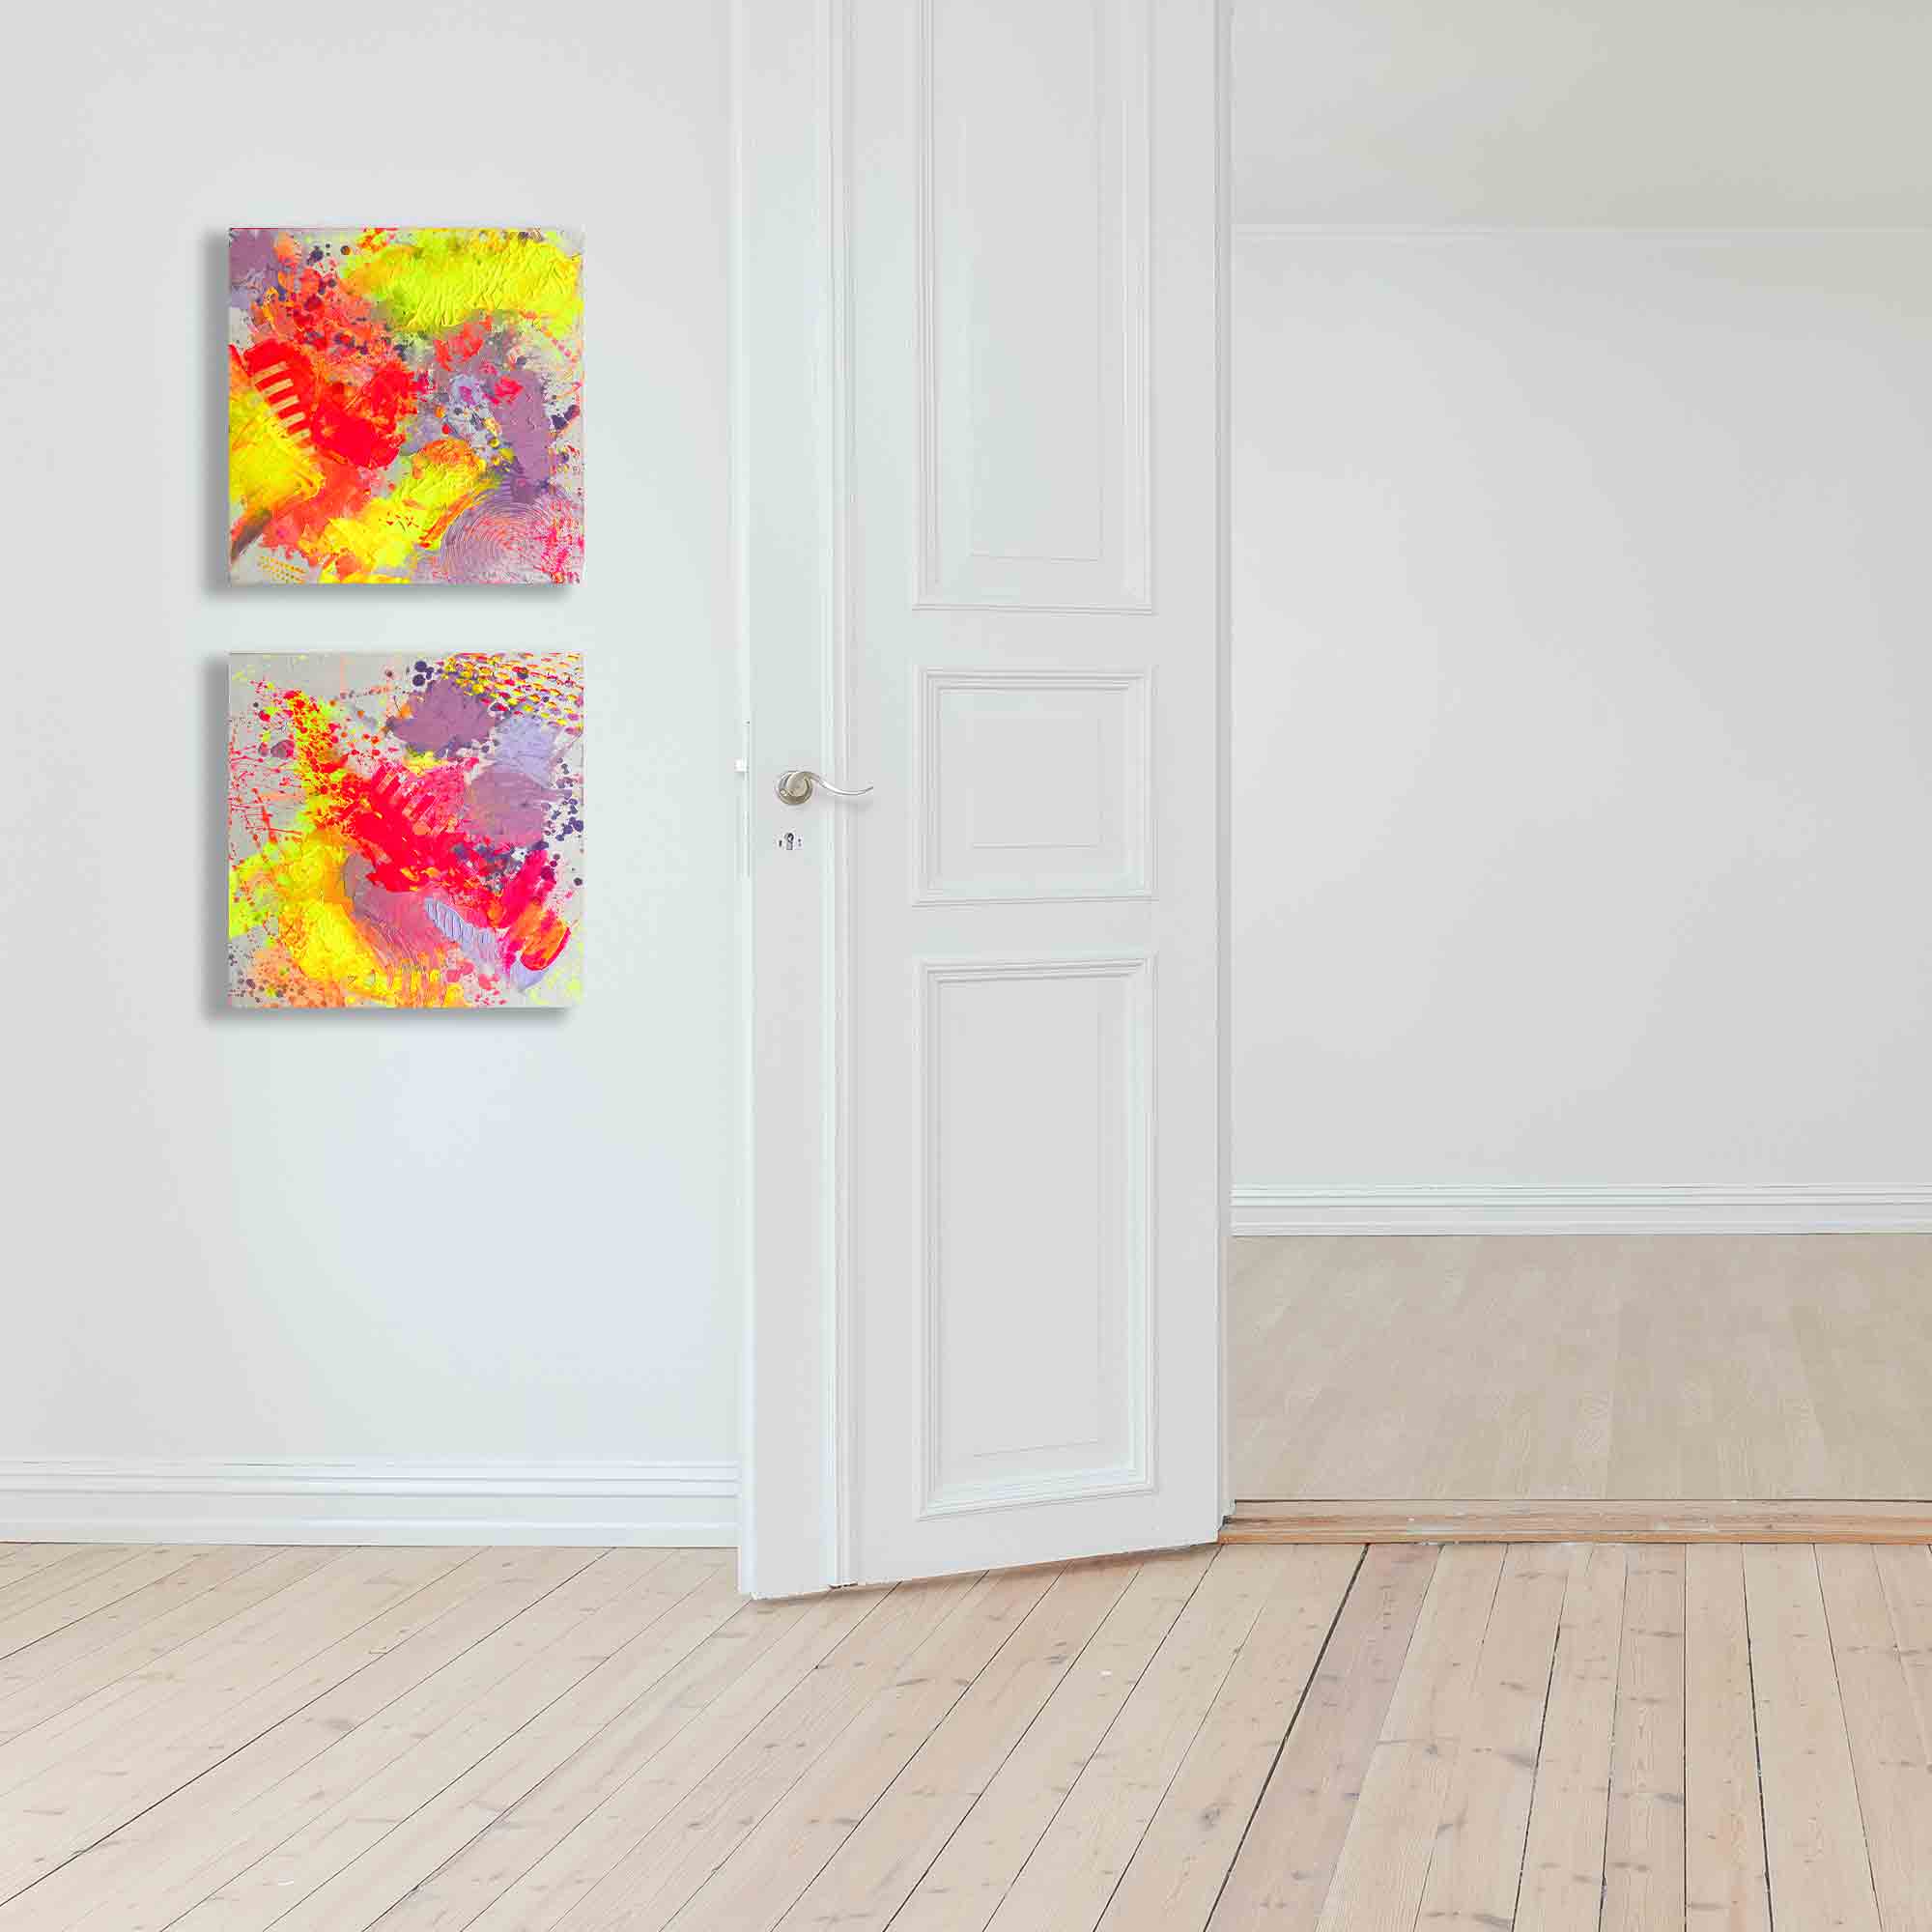 Imagebild: Abstraktes Leinwandbild ON THE DANCEFLOOR von Sophie Friederichs. Farbwelt: Neongelb, Neonpink, Lila und Orange